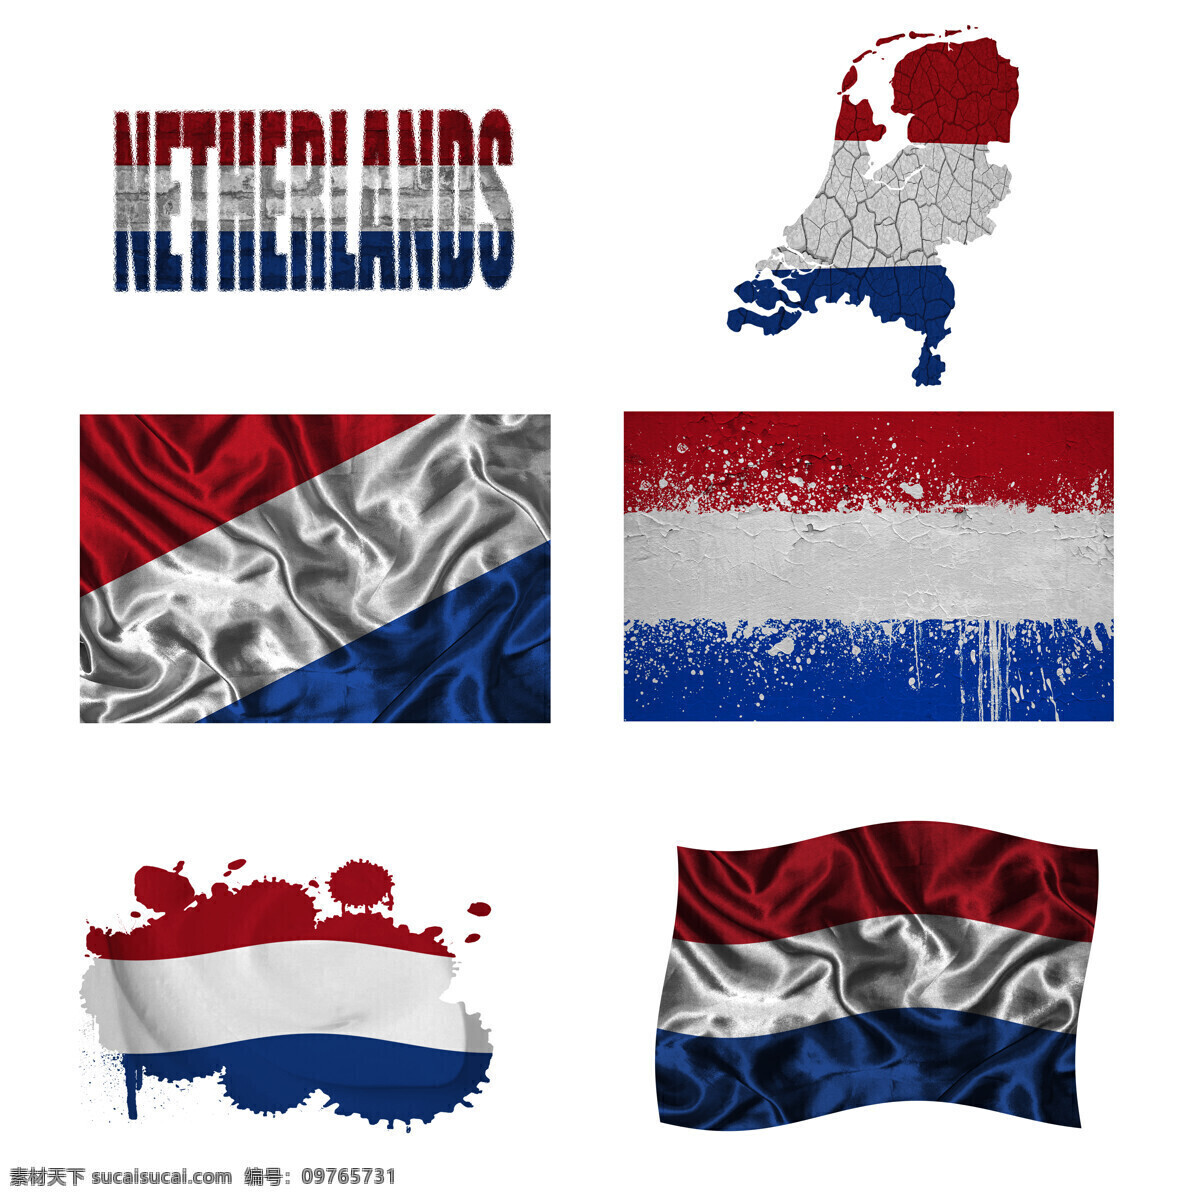 荷兰 地图 国旗 荷兰国旗 旗帜 国旗图案 其他类别 地图图片 生活百科